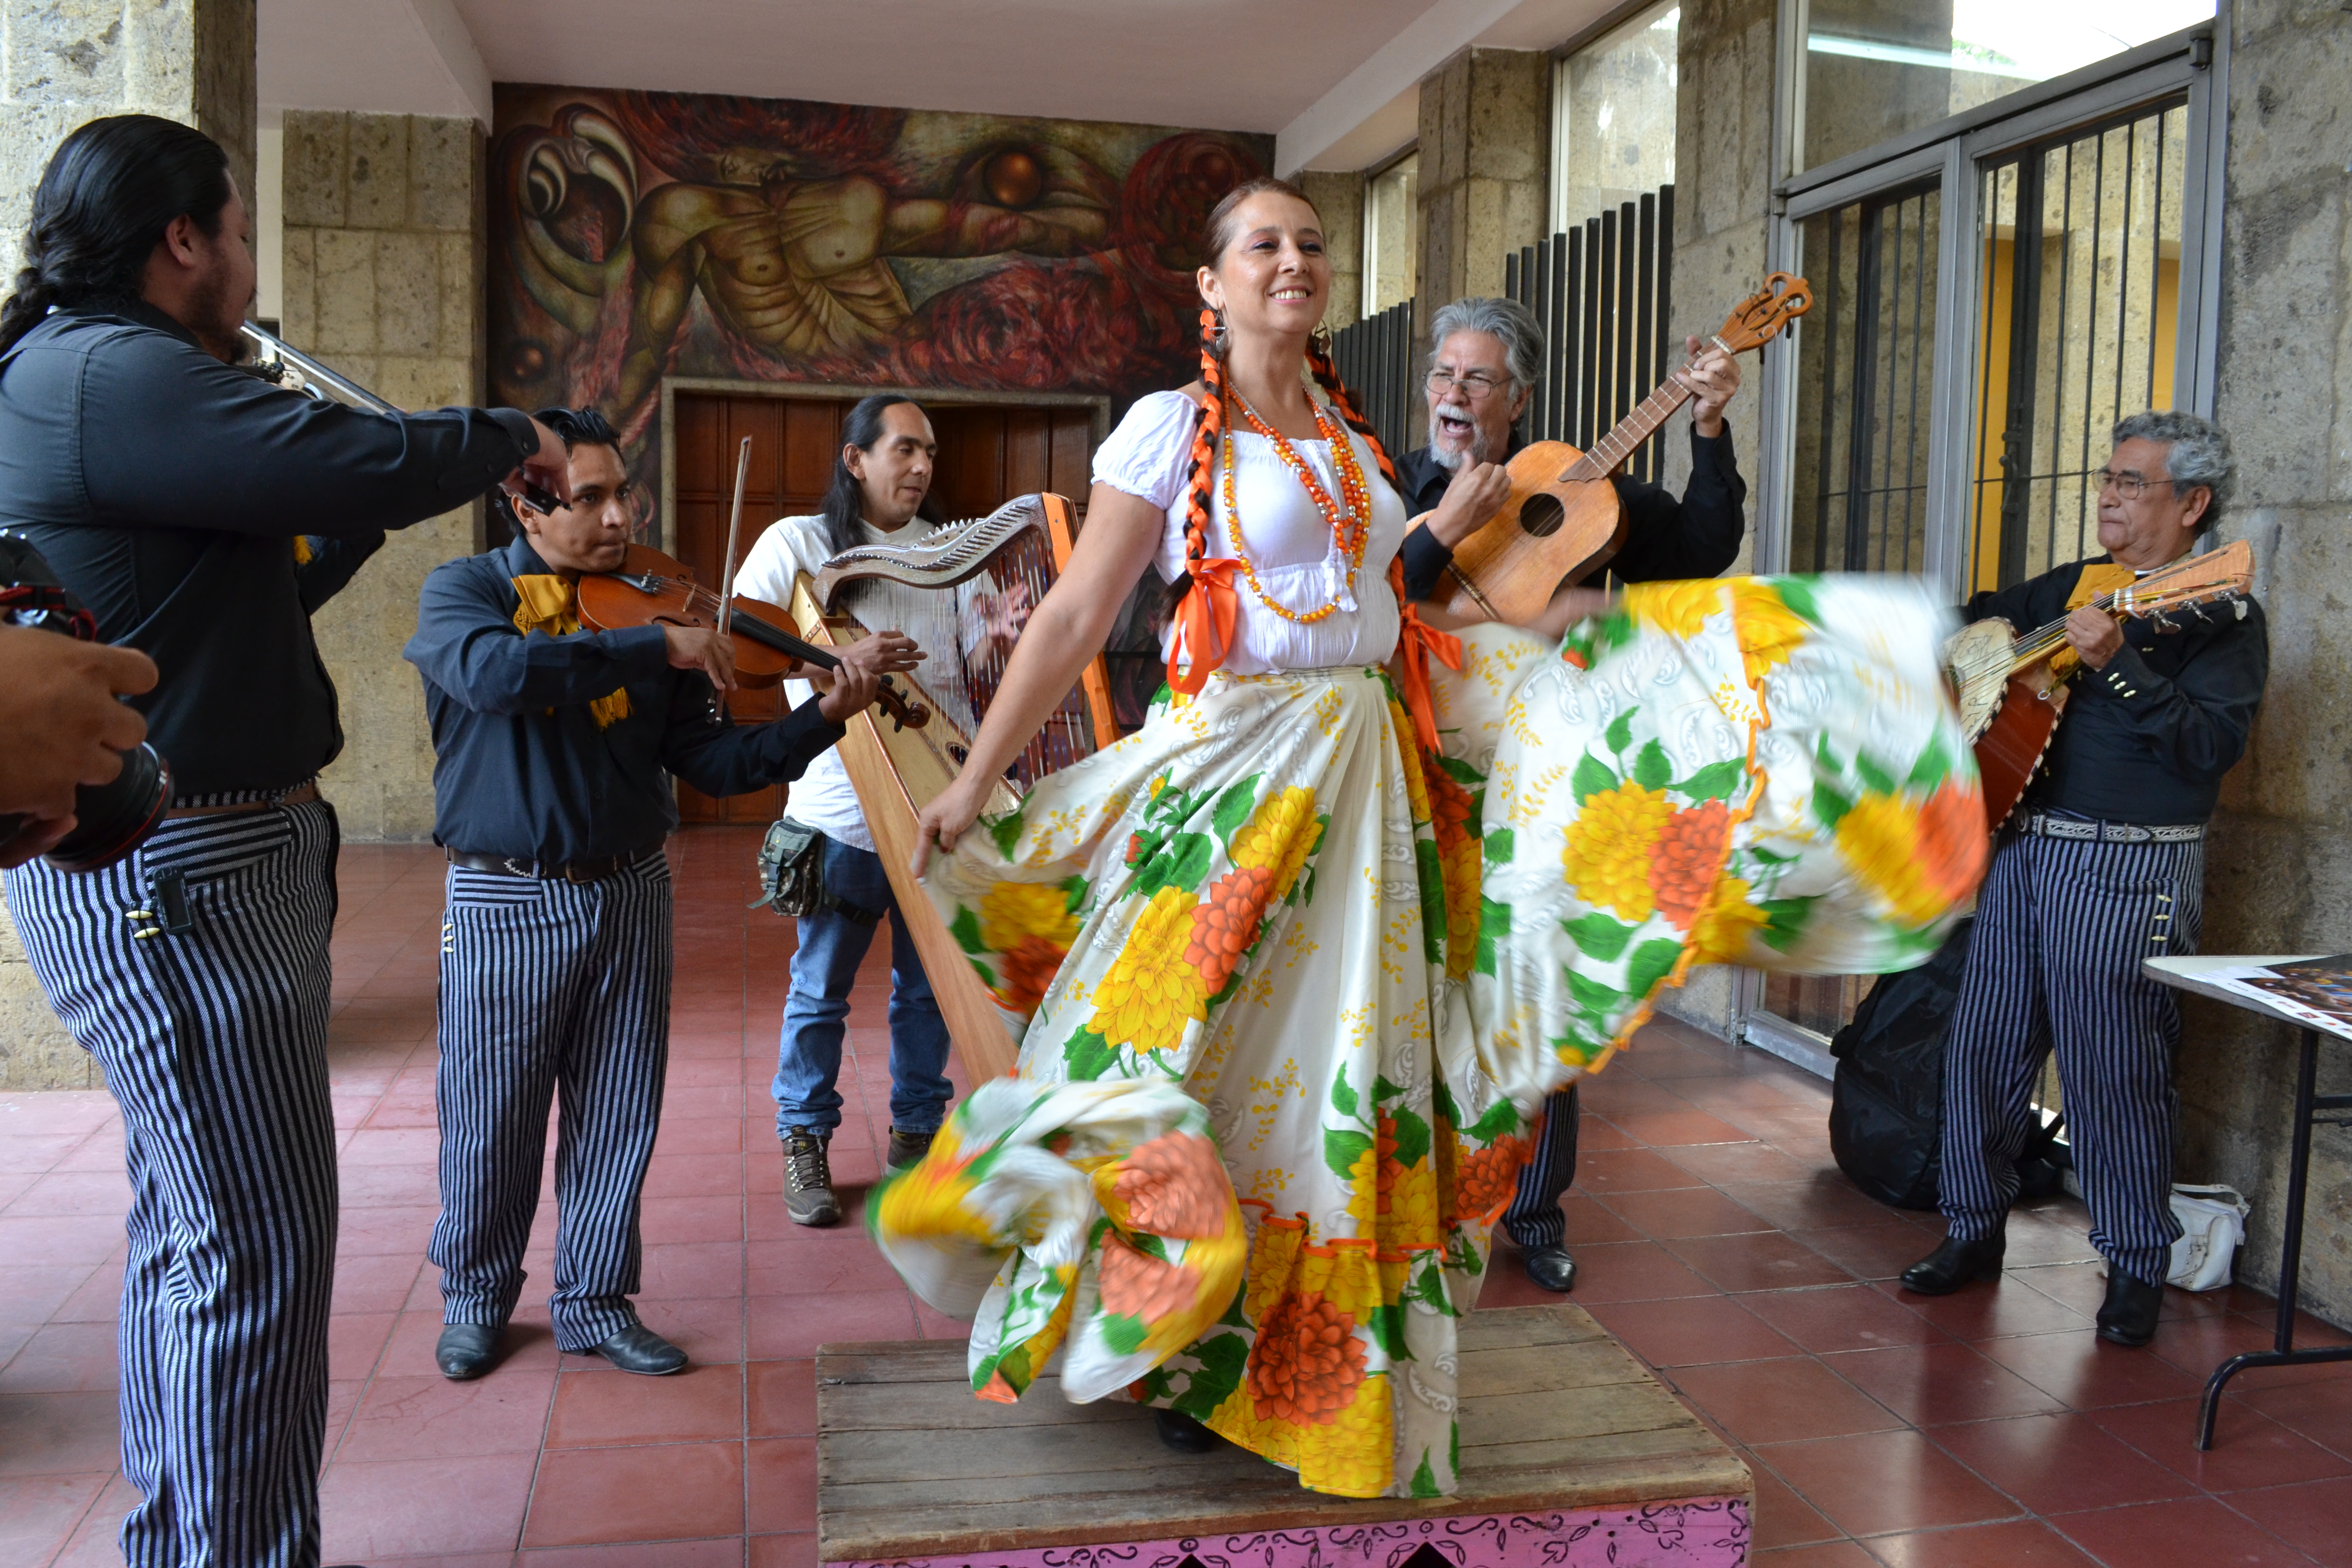  Lanzan convocatorias para el encuentro nacional del mariachi tradicional